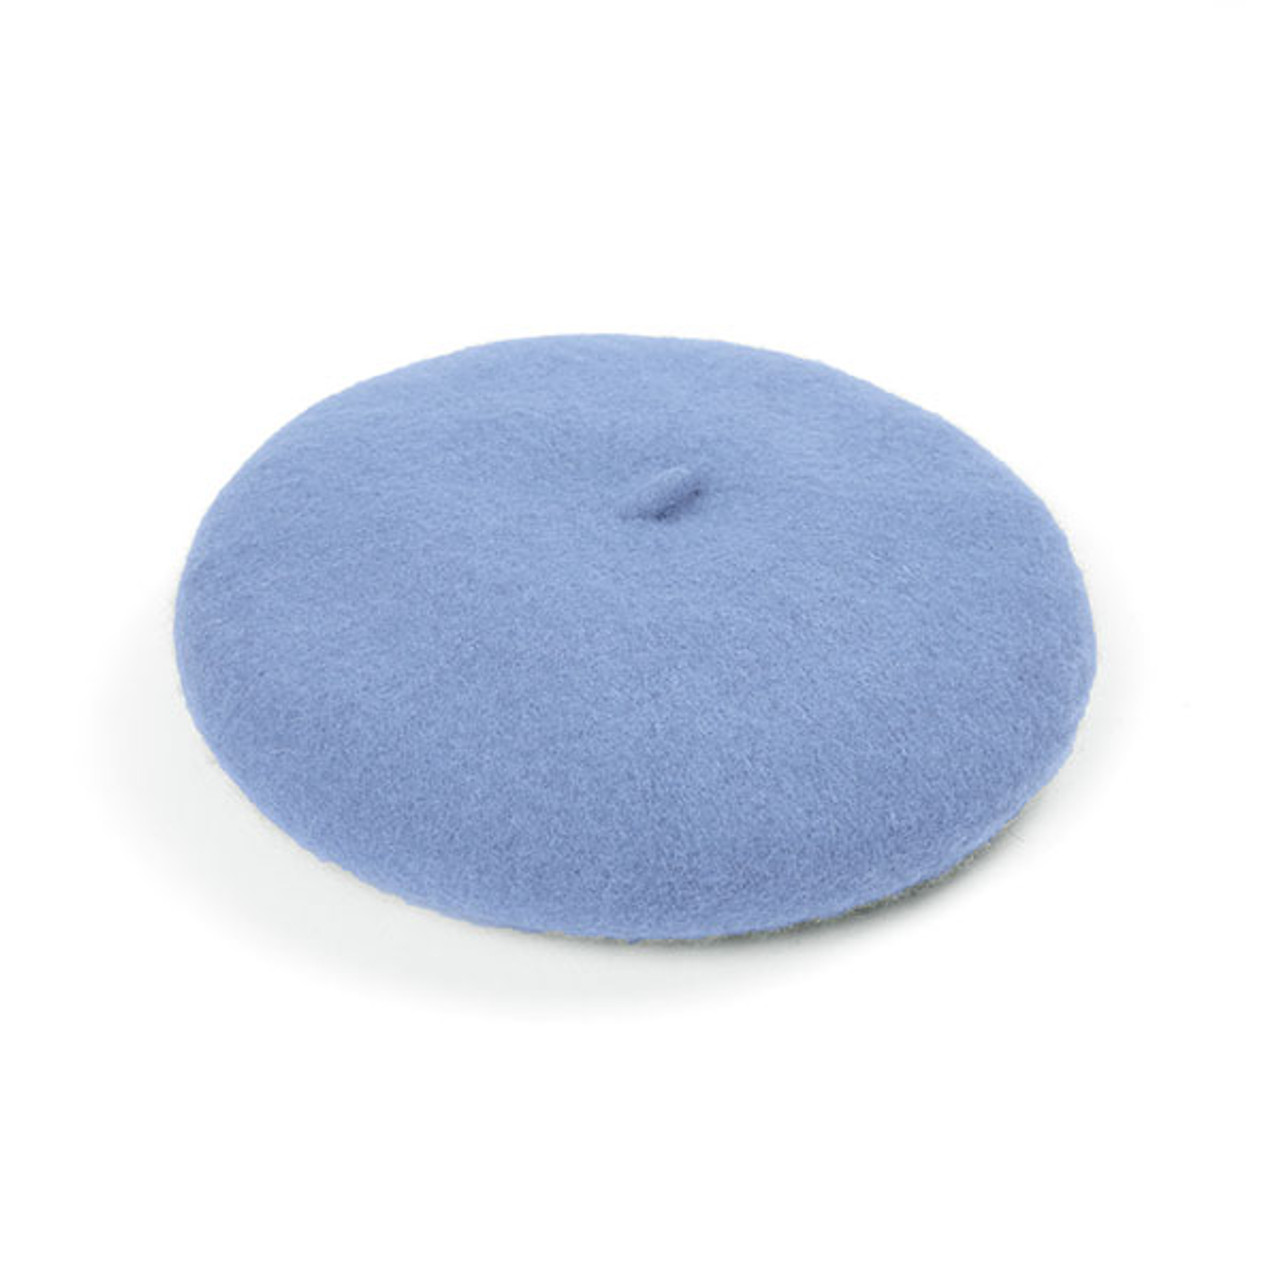 A powder blue beret.